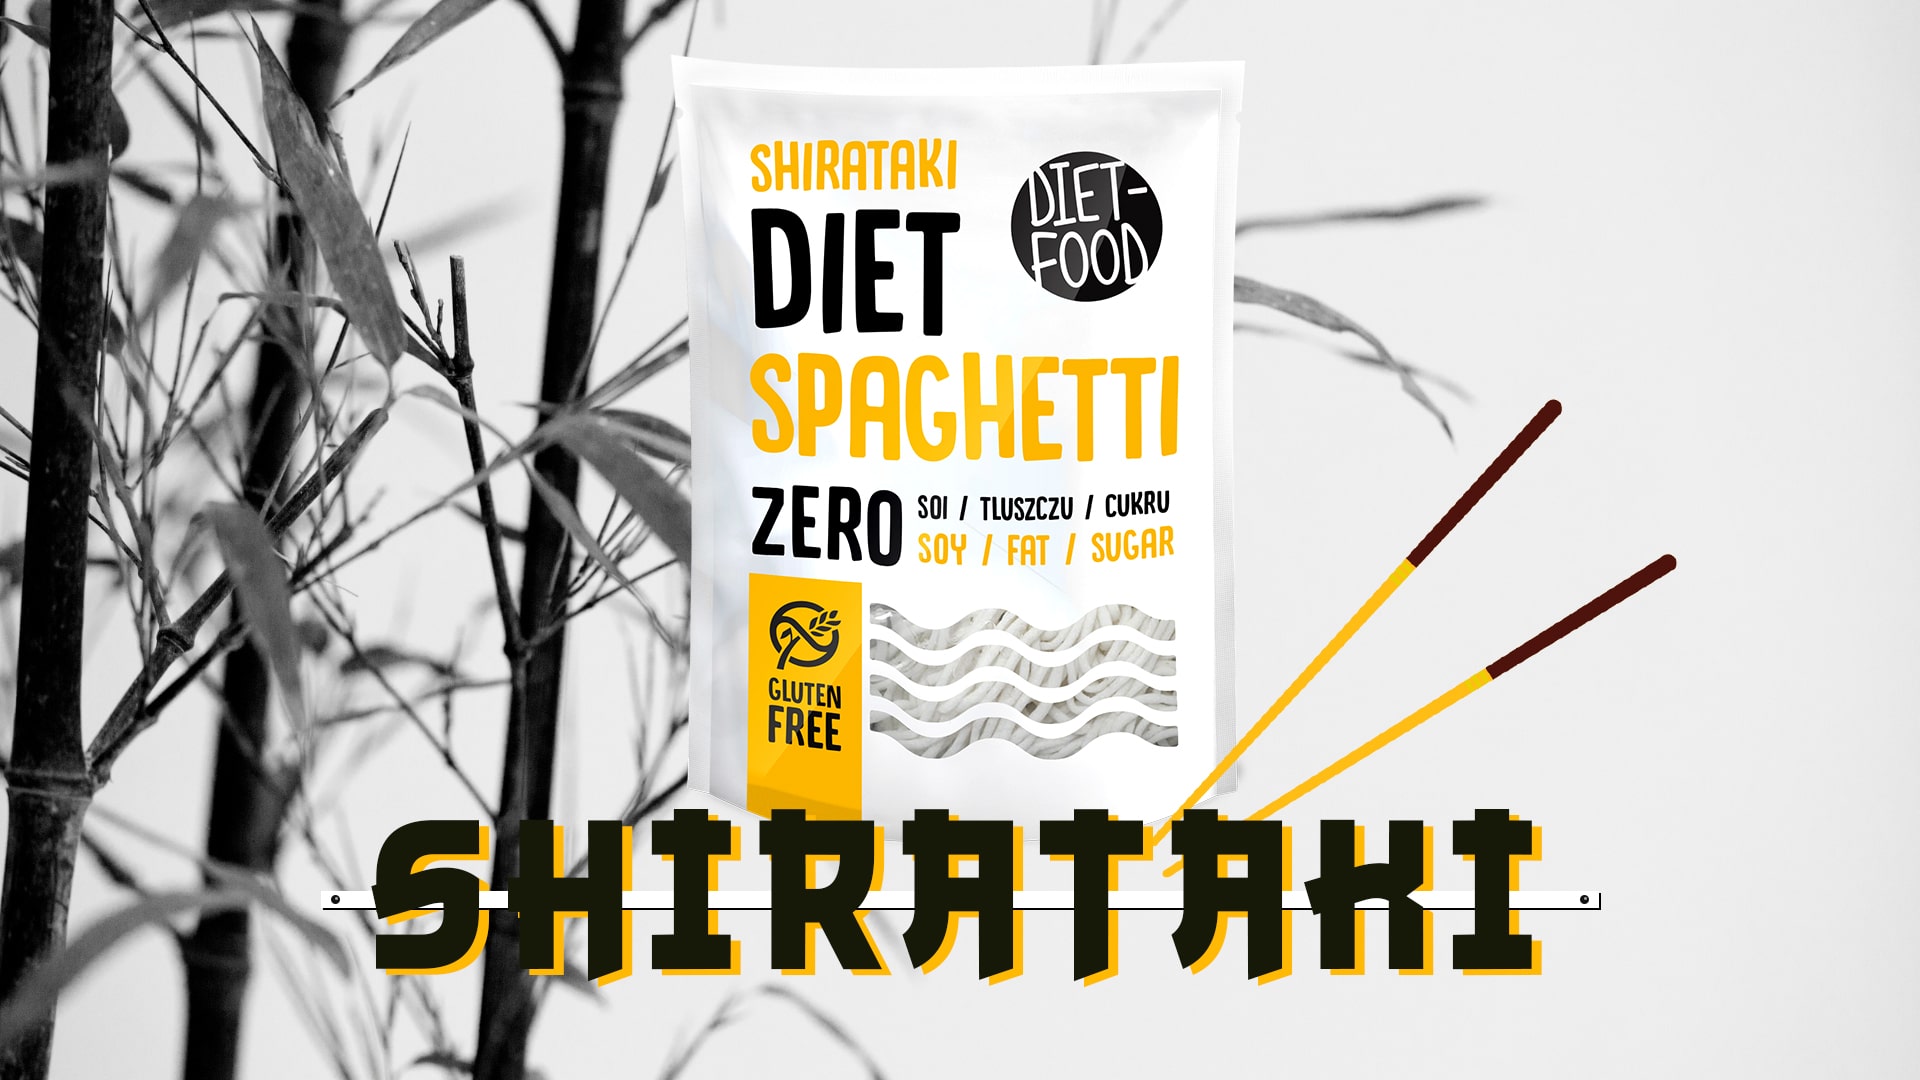 Diet Food - Diet Spaghetti